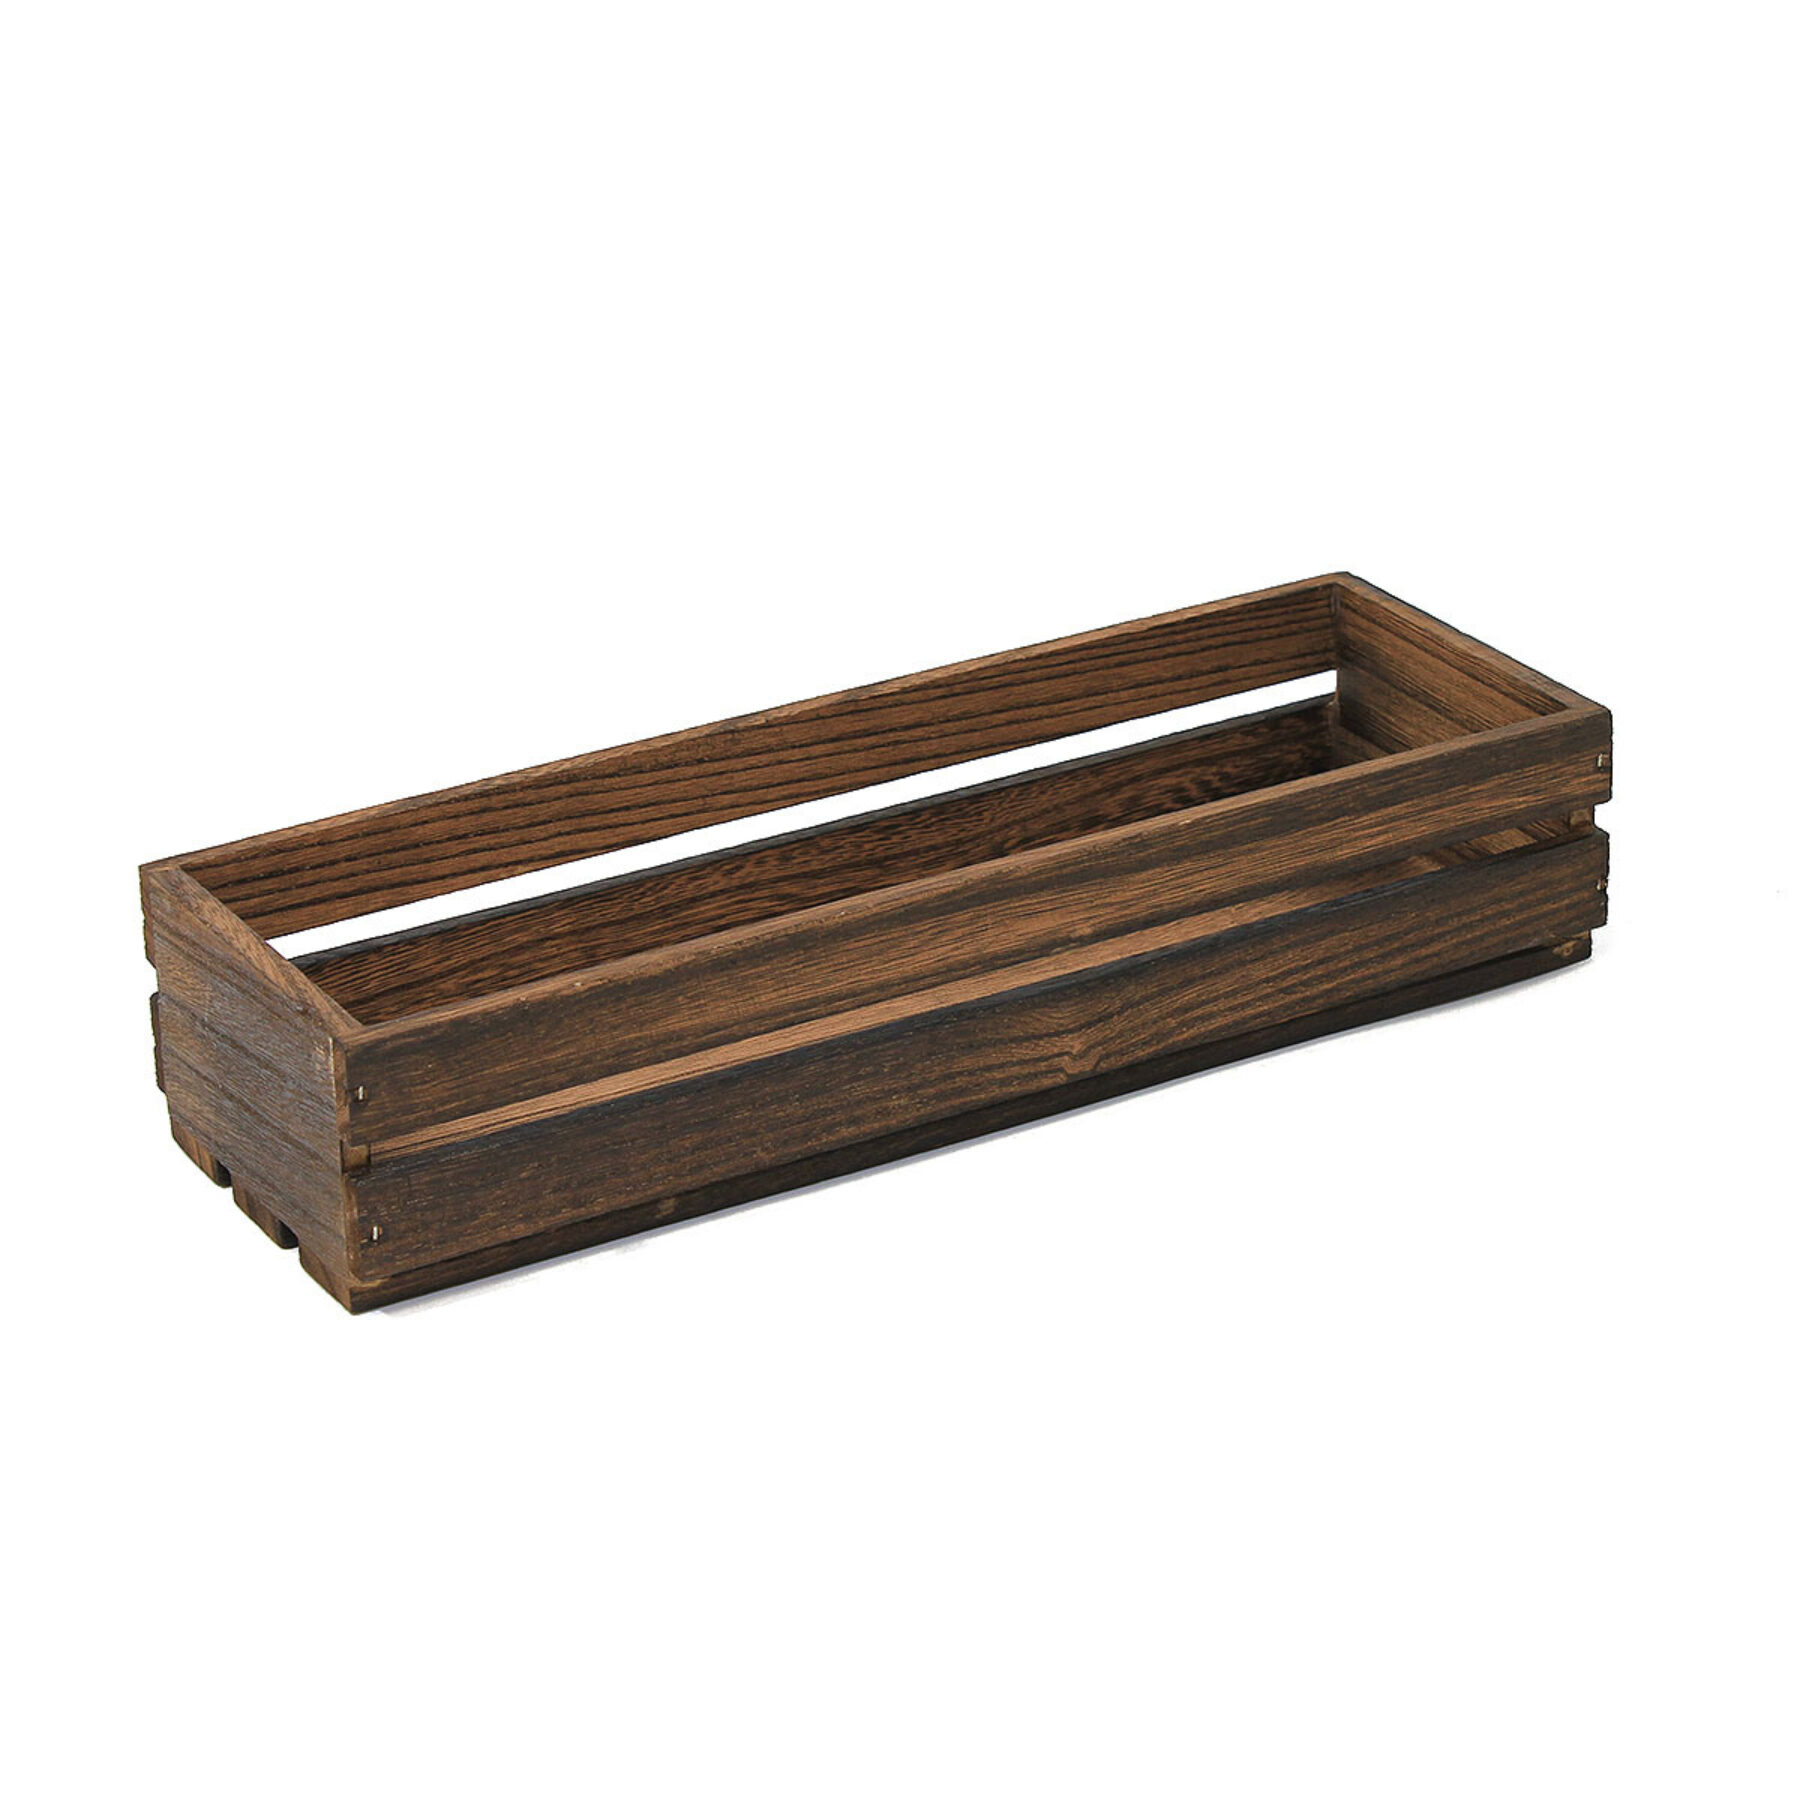 Medium Dark Wooden Crate